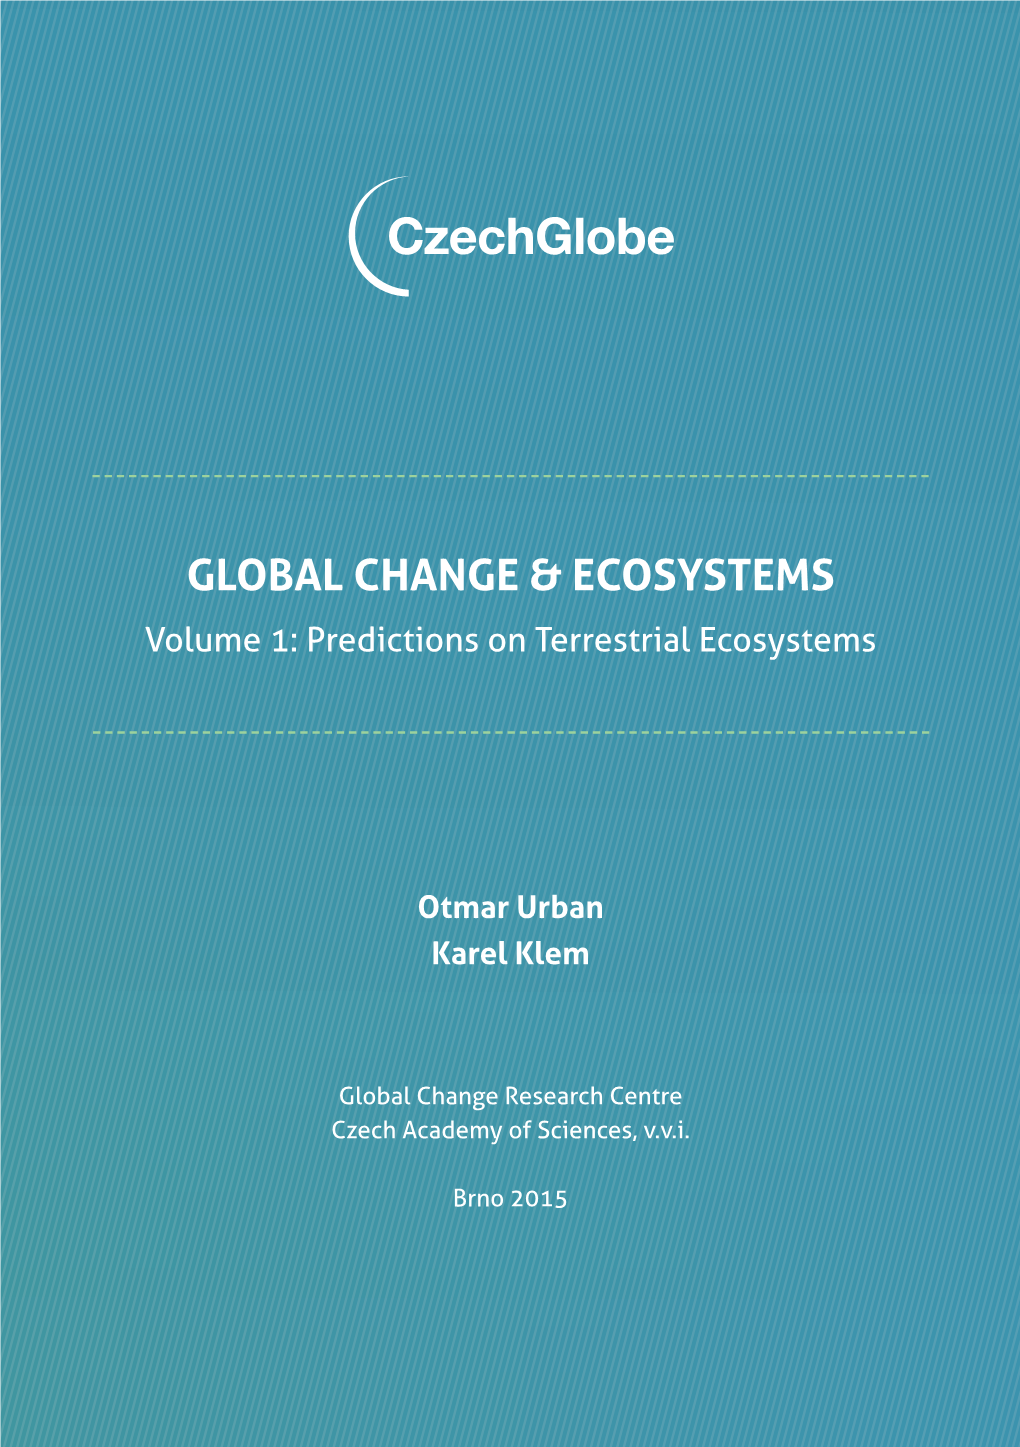 Global Change & Ecosystems